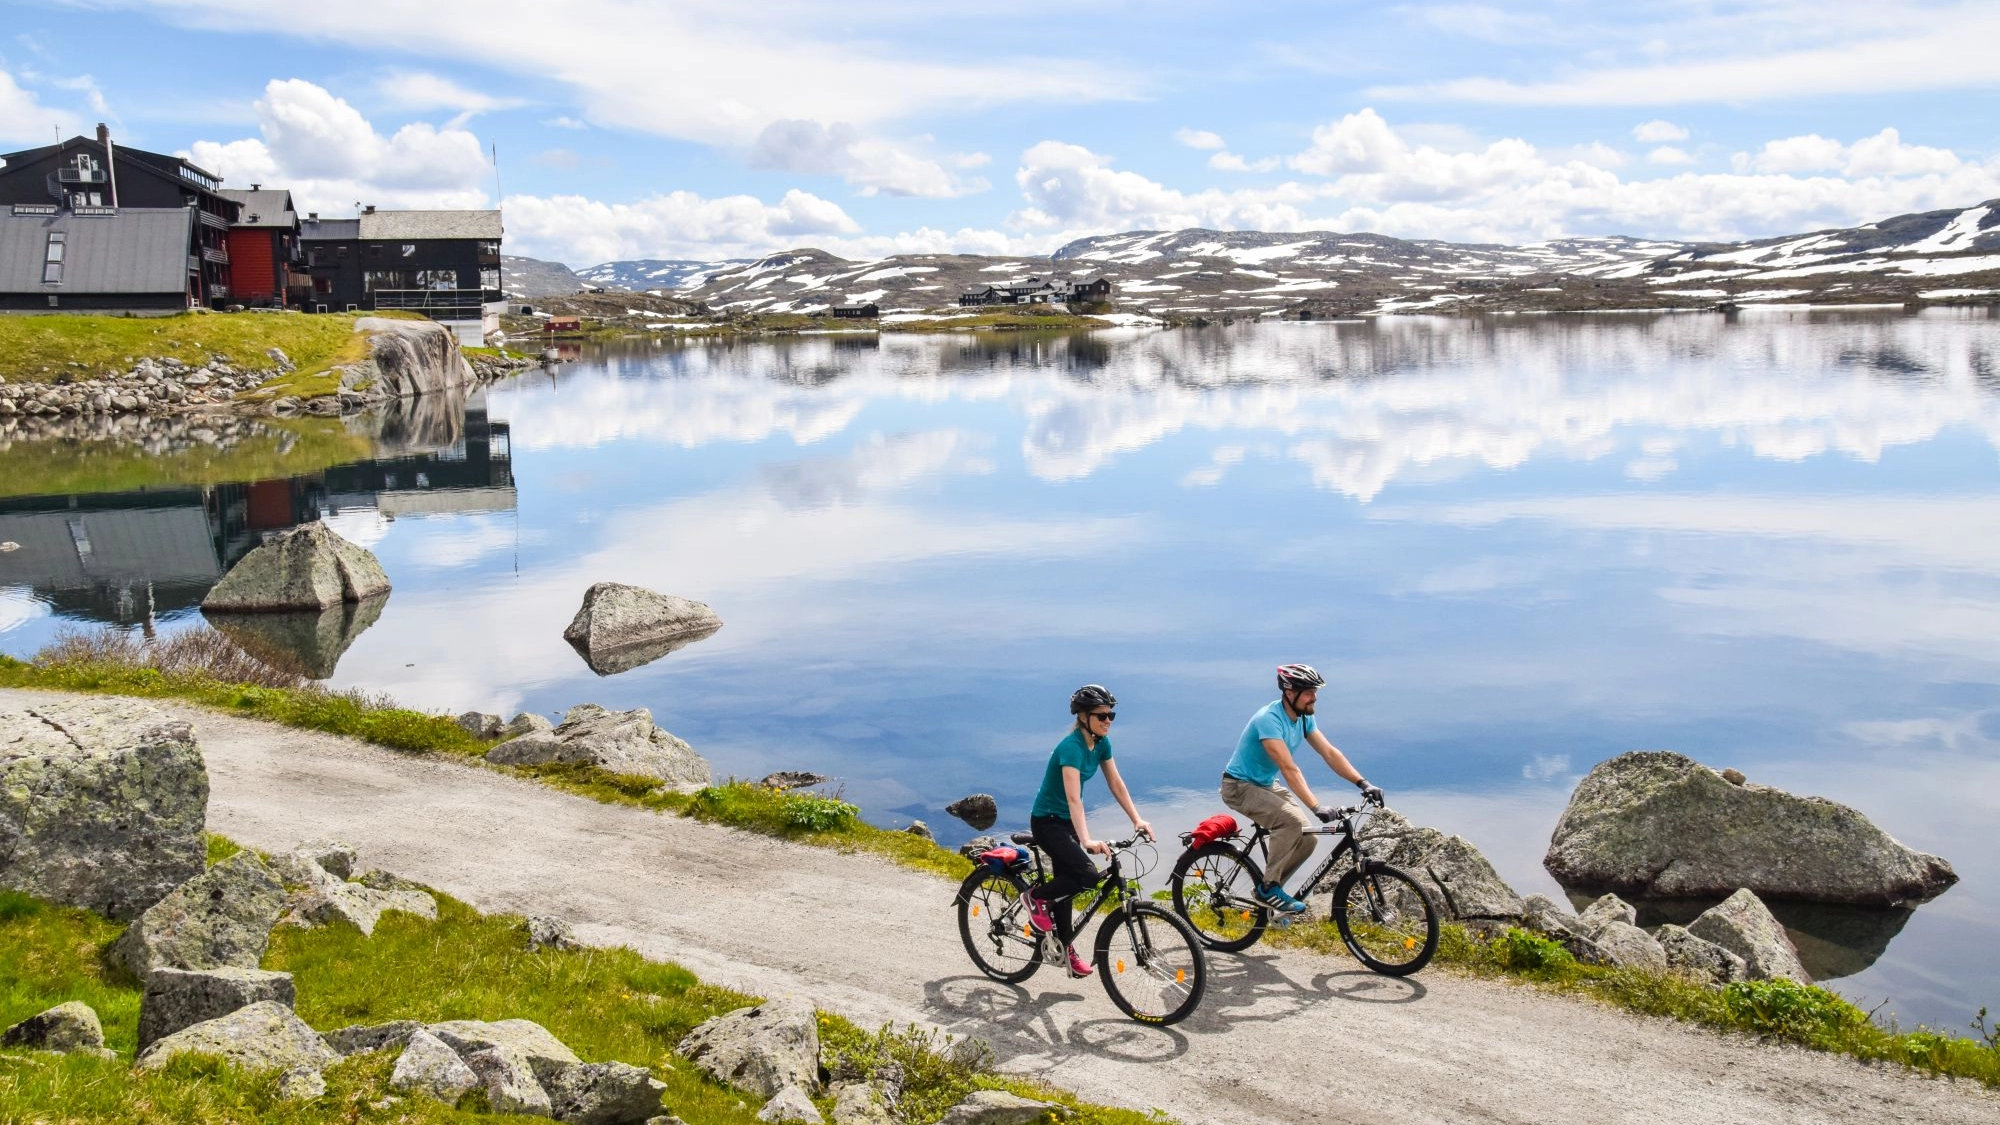 Biking trip from Finse - Rallarvegen, Norway